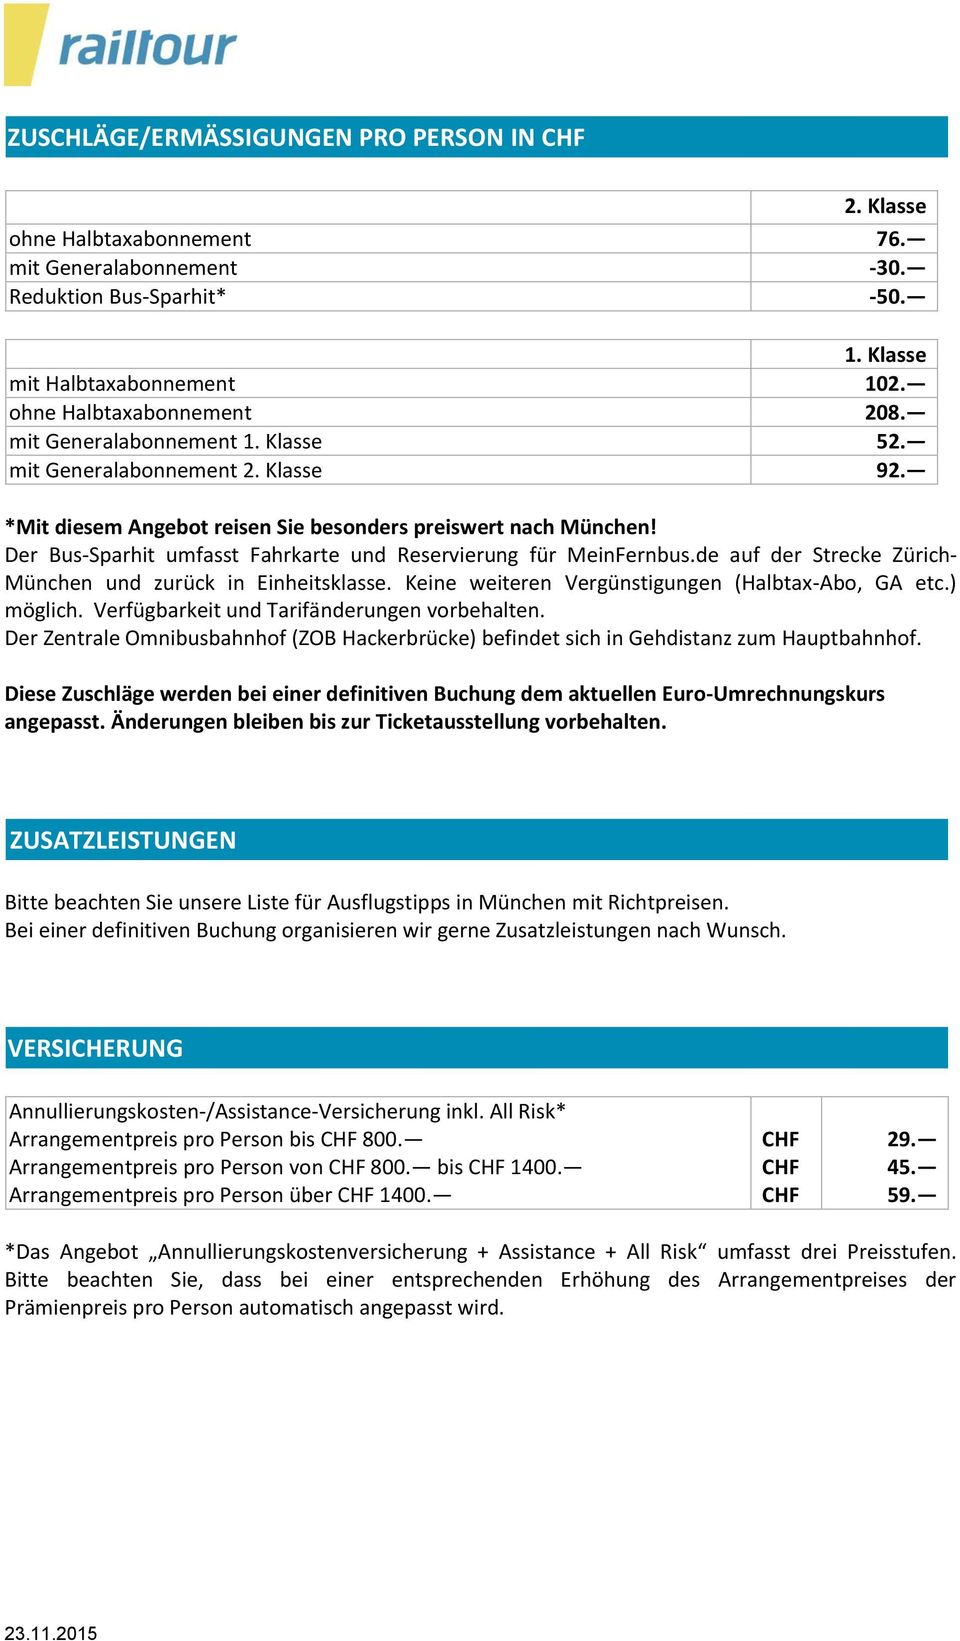 Der Bus-Sparhit umfasst Fahrkarte und Reservierung für MeinFernbus.de auf der Strecke Zürich- München und zurück in Einheitsklasse. Keine weiteren Vergünstigungen (Halbtax-Abo, GA etc.) möglich.